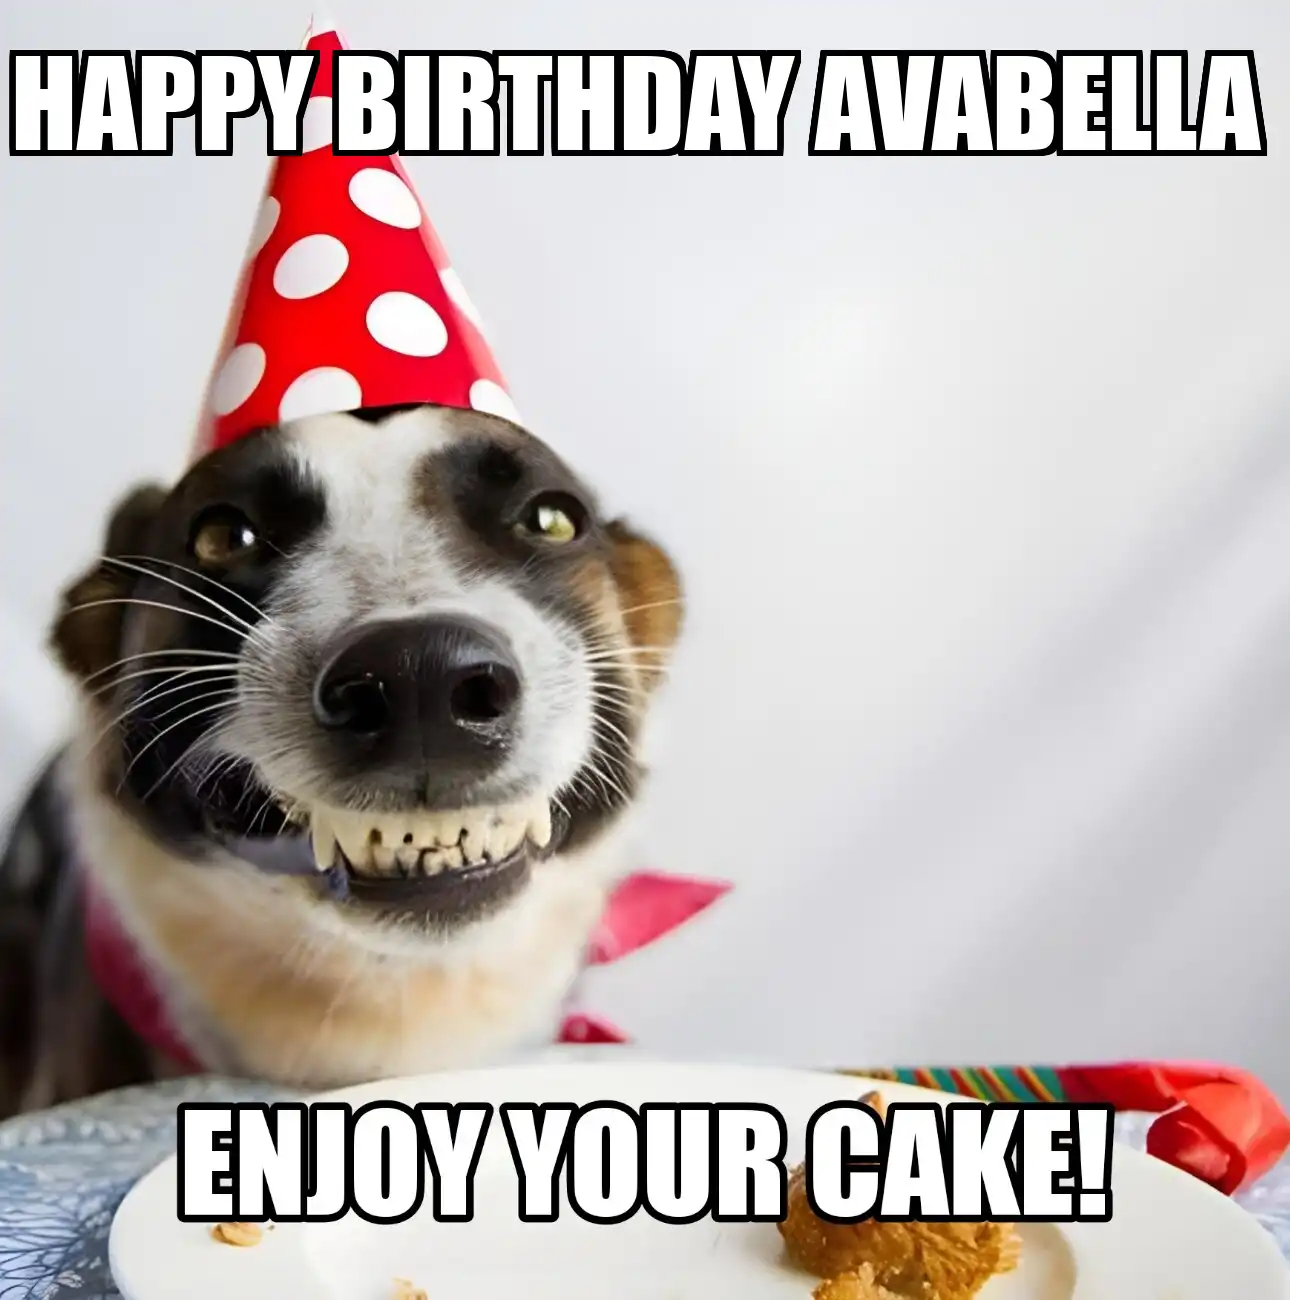 Happy Birthday Avabella Enjoy Your Cake Dog Meme